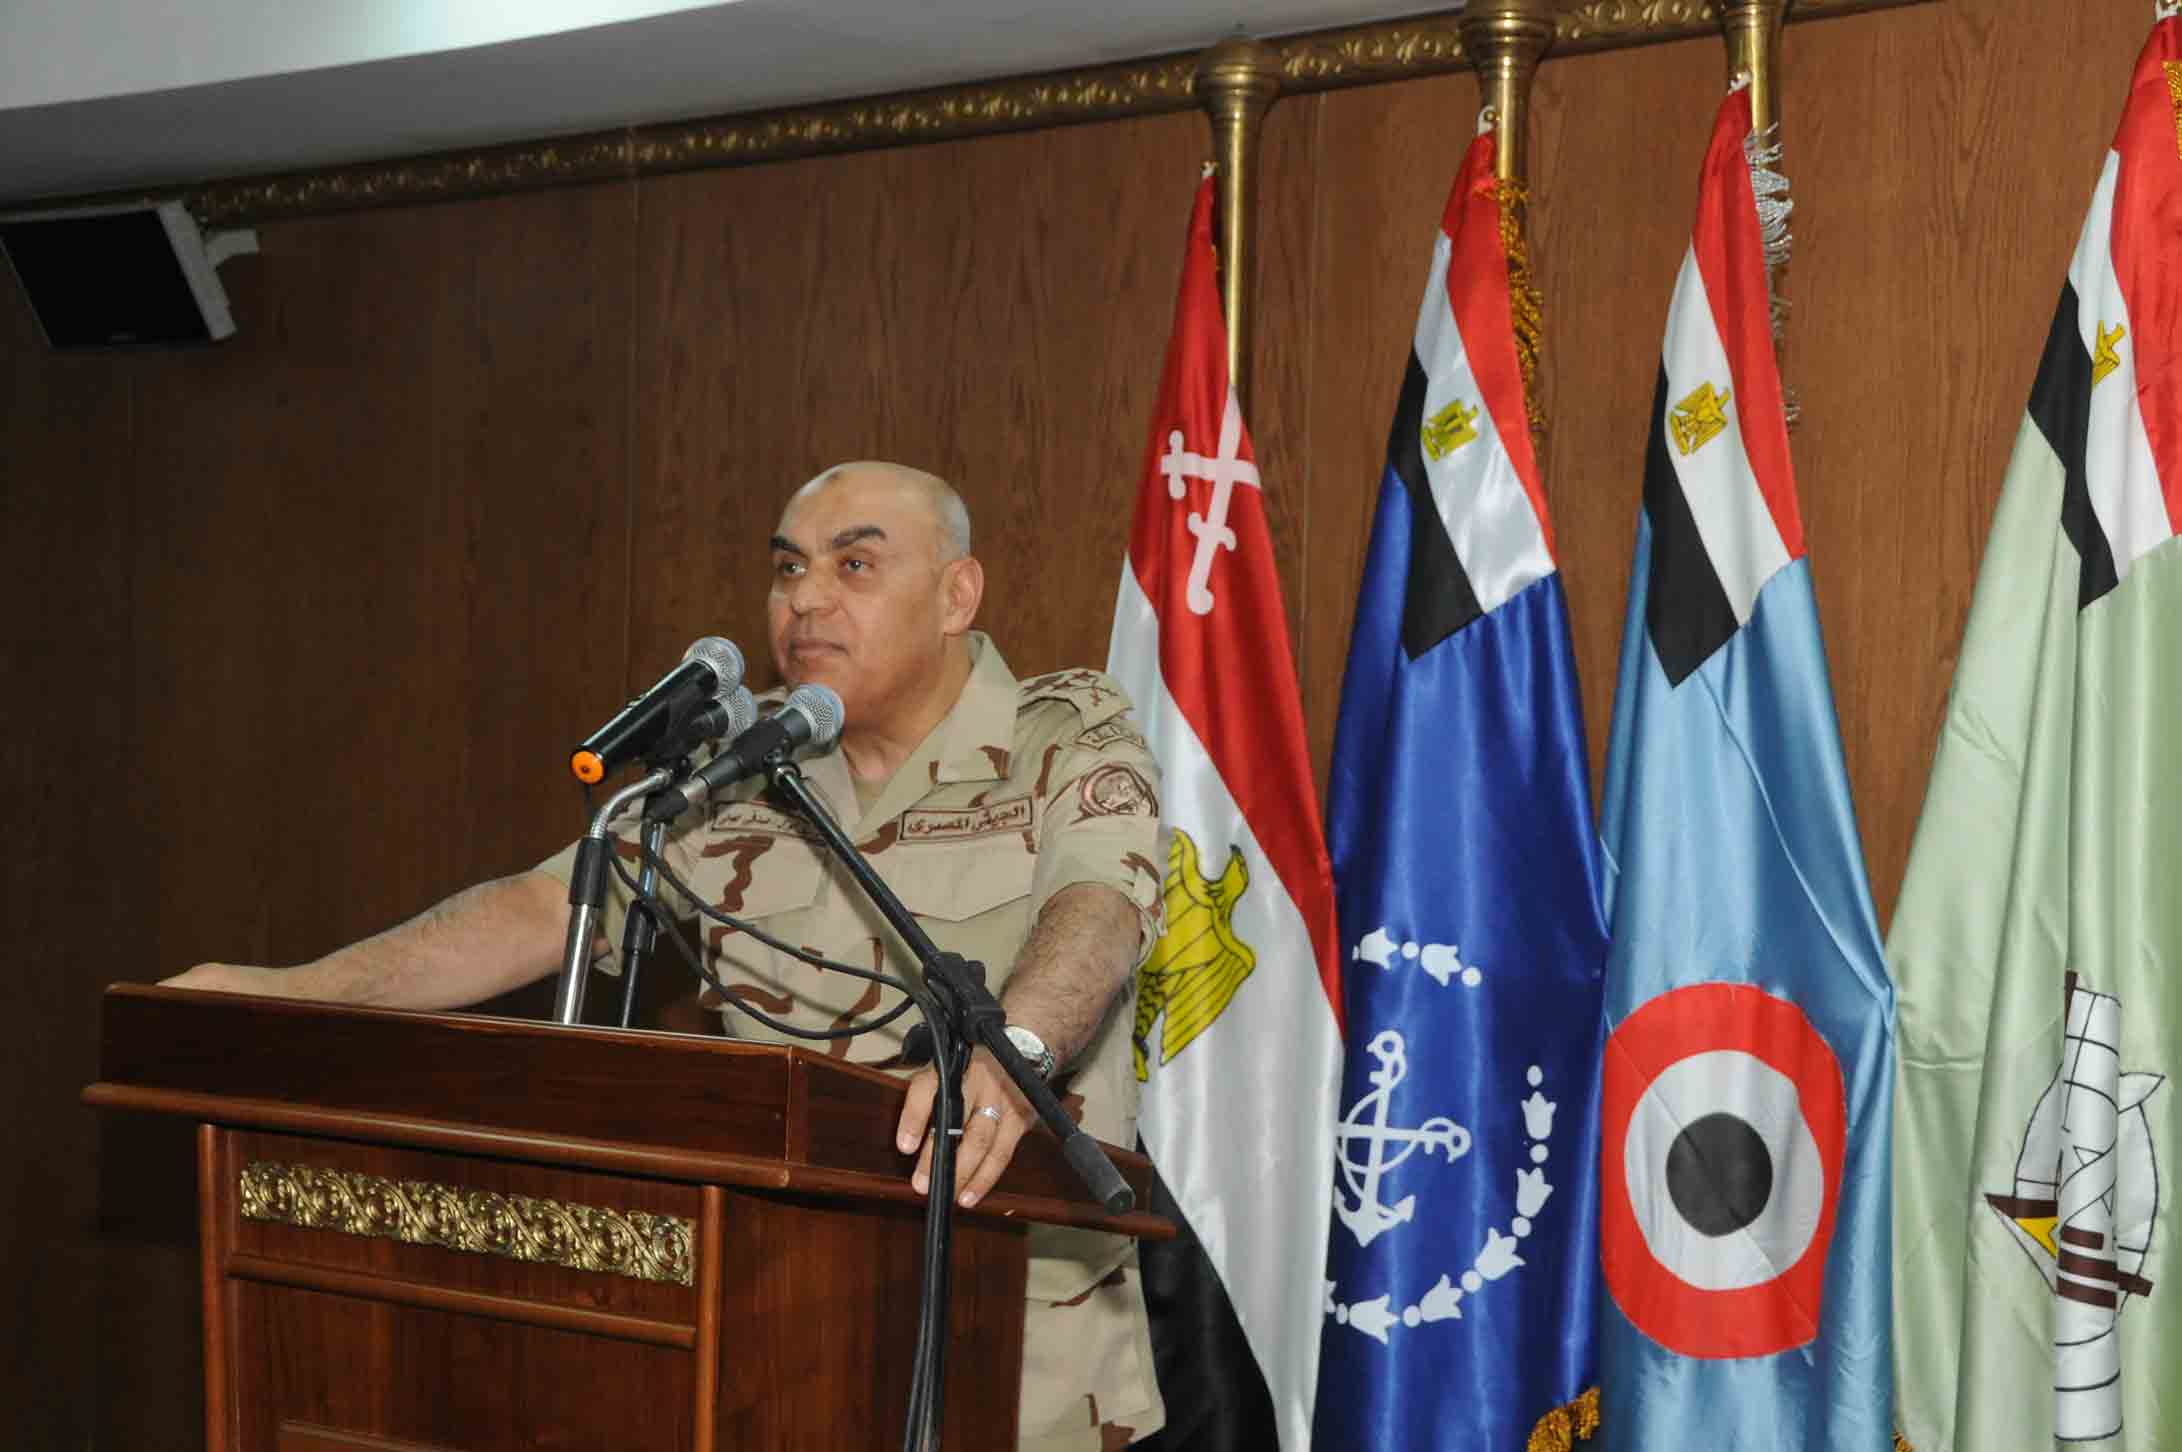   القائد العام للقوات المسلحة: الوضع الحالي بالمنطقة فرض علينا تحديث وتطوير القوات المسلحة